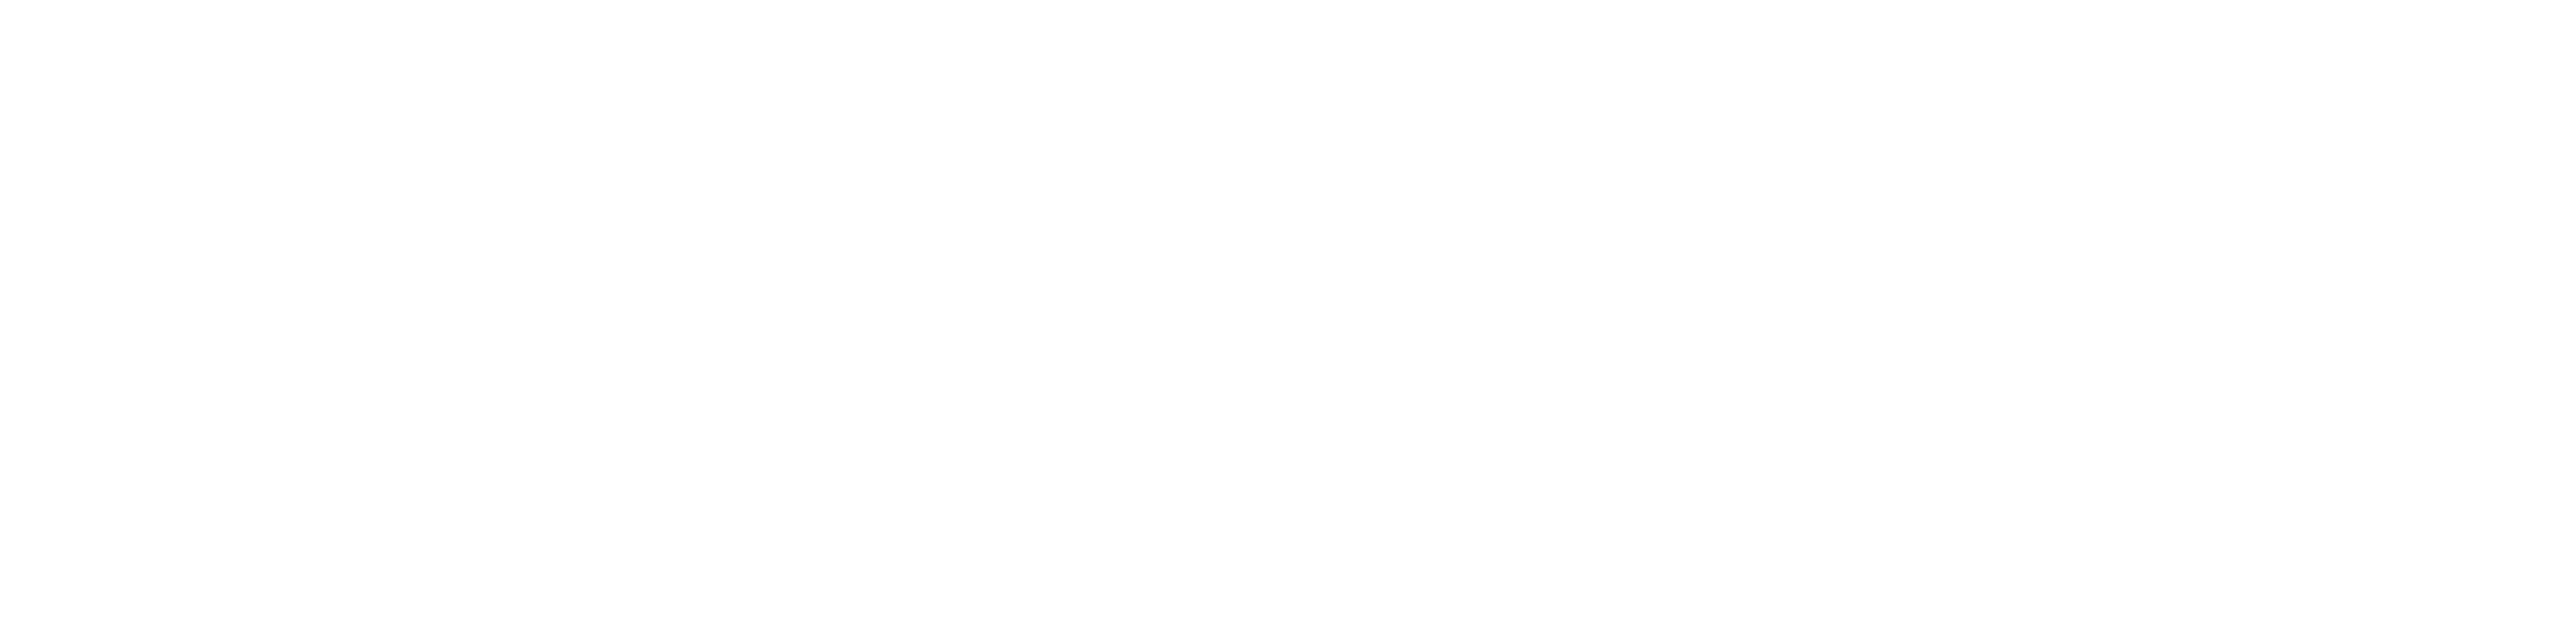 Endocrine Society Logo